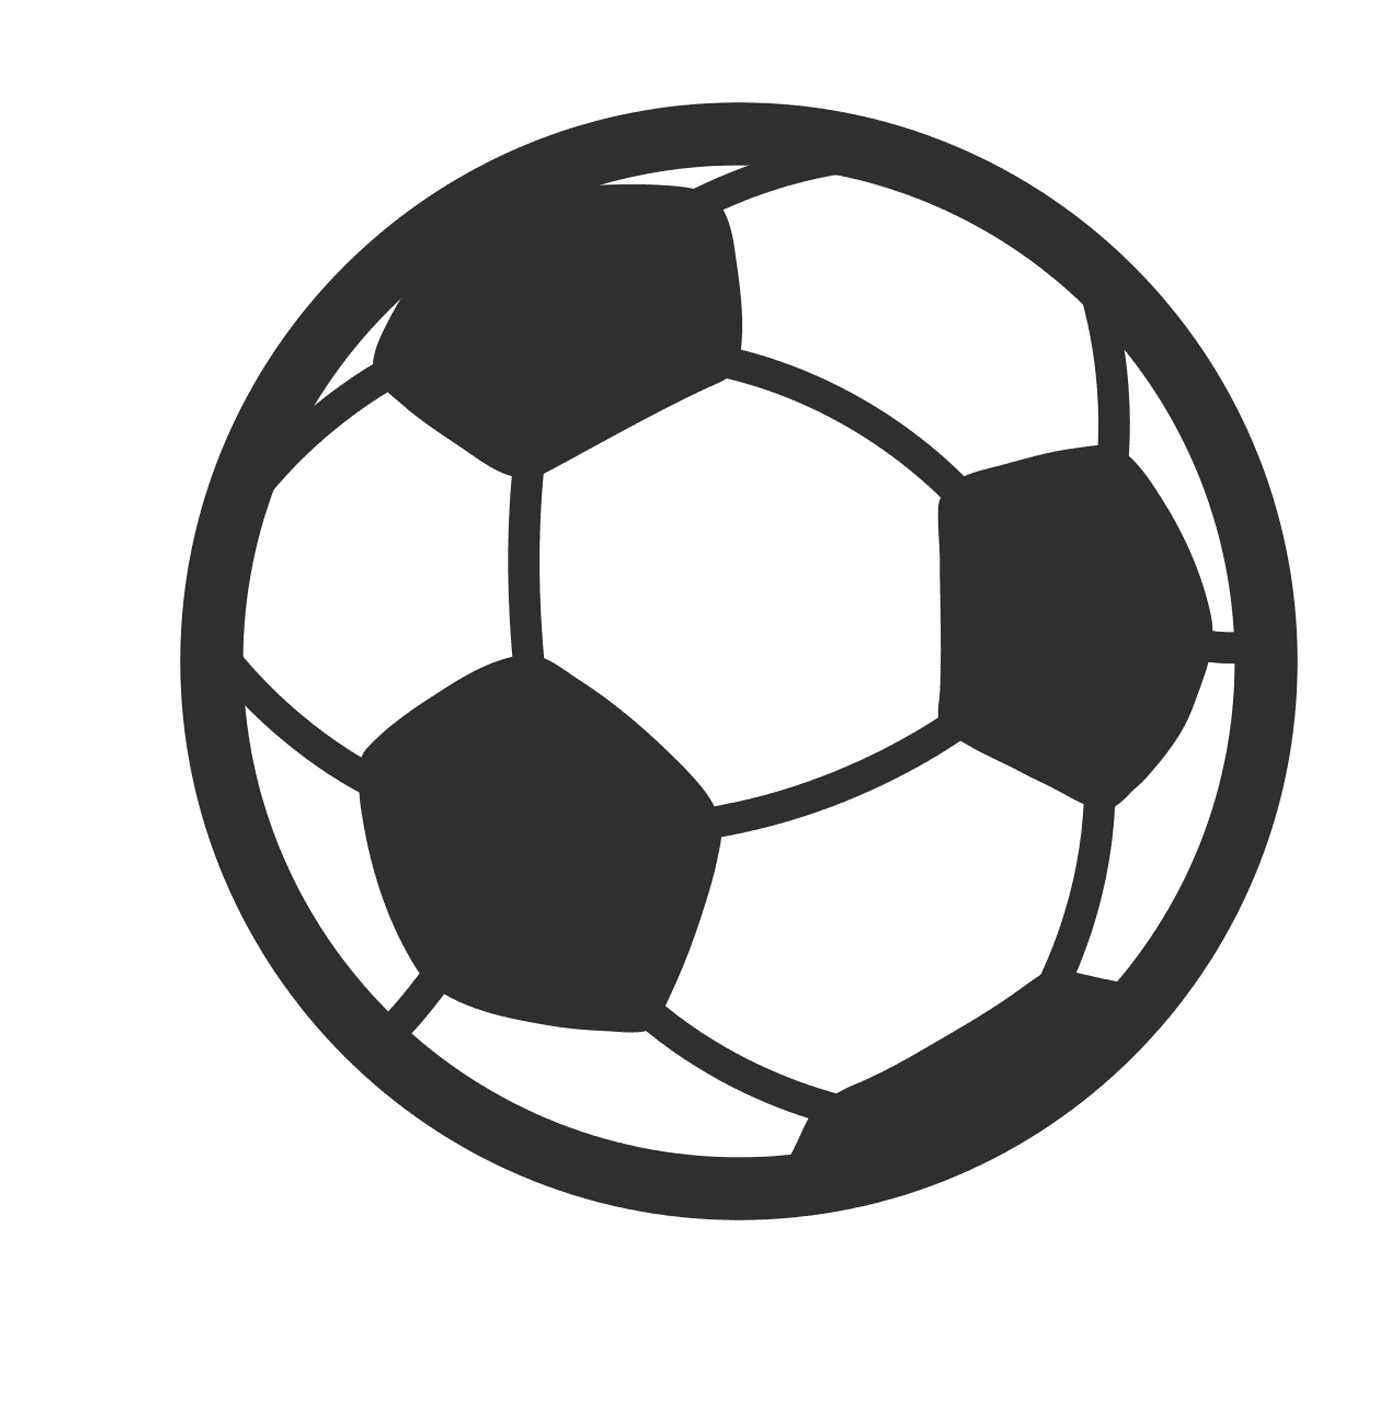  A soccer ball 